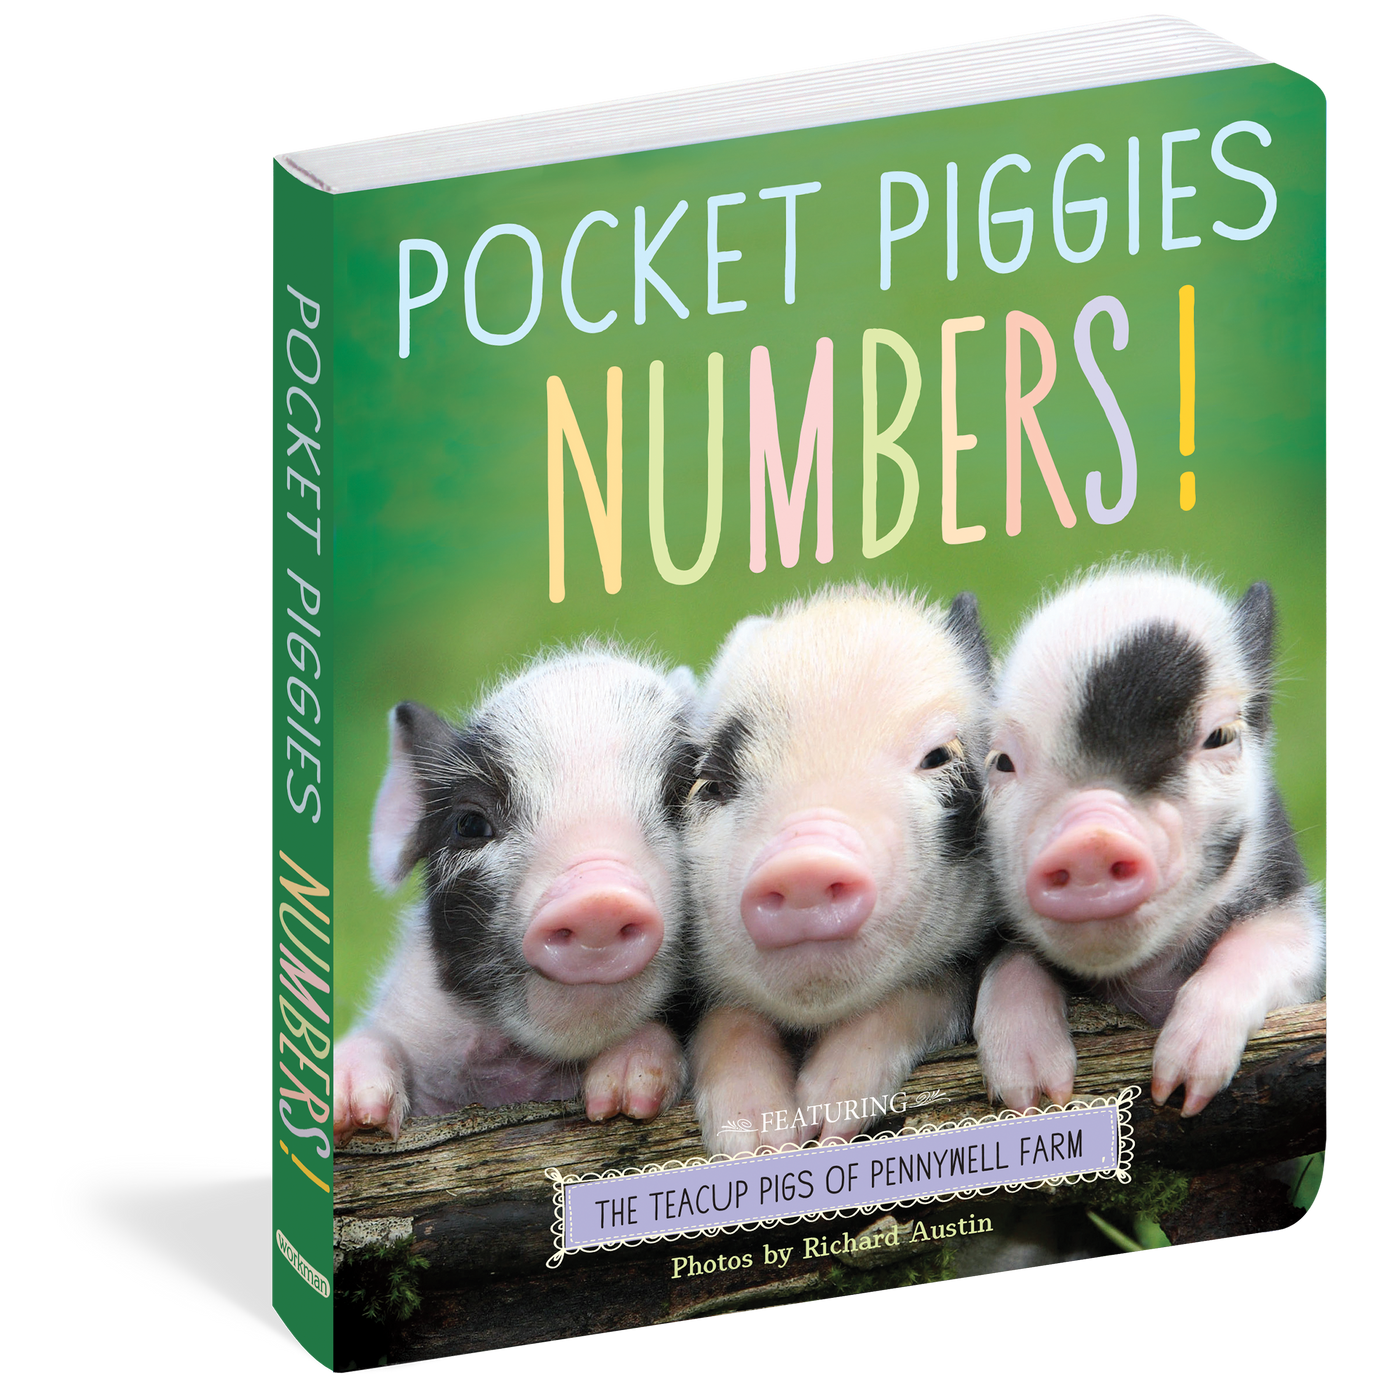 Pocket Piggies Numbers book